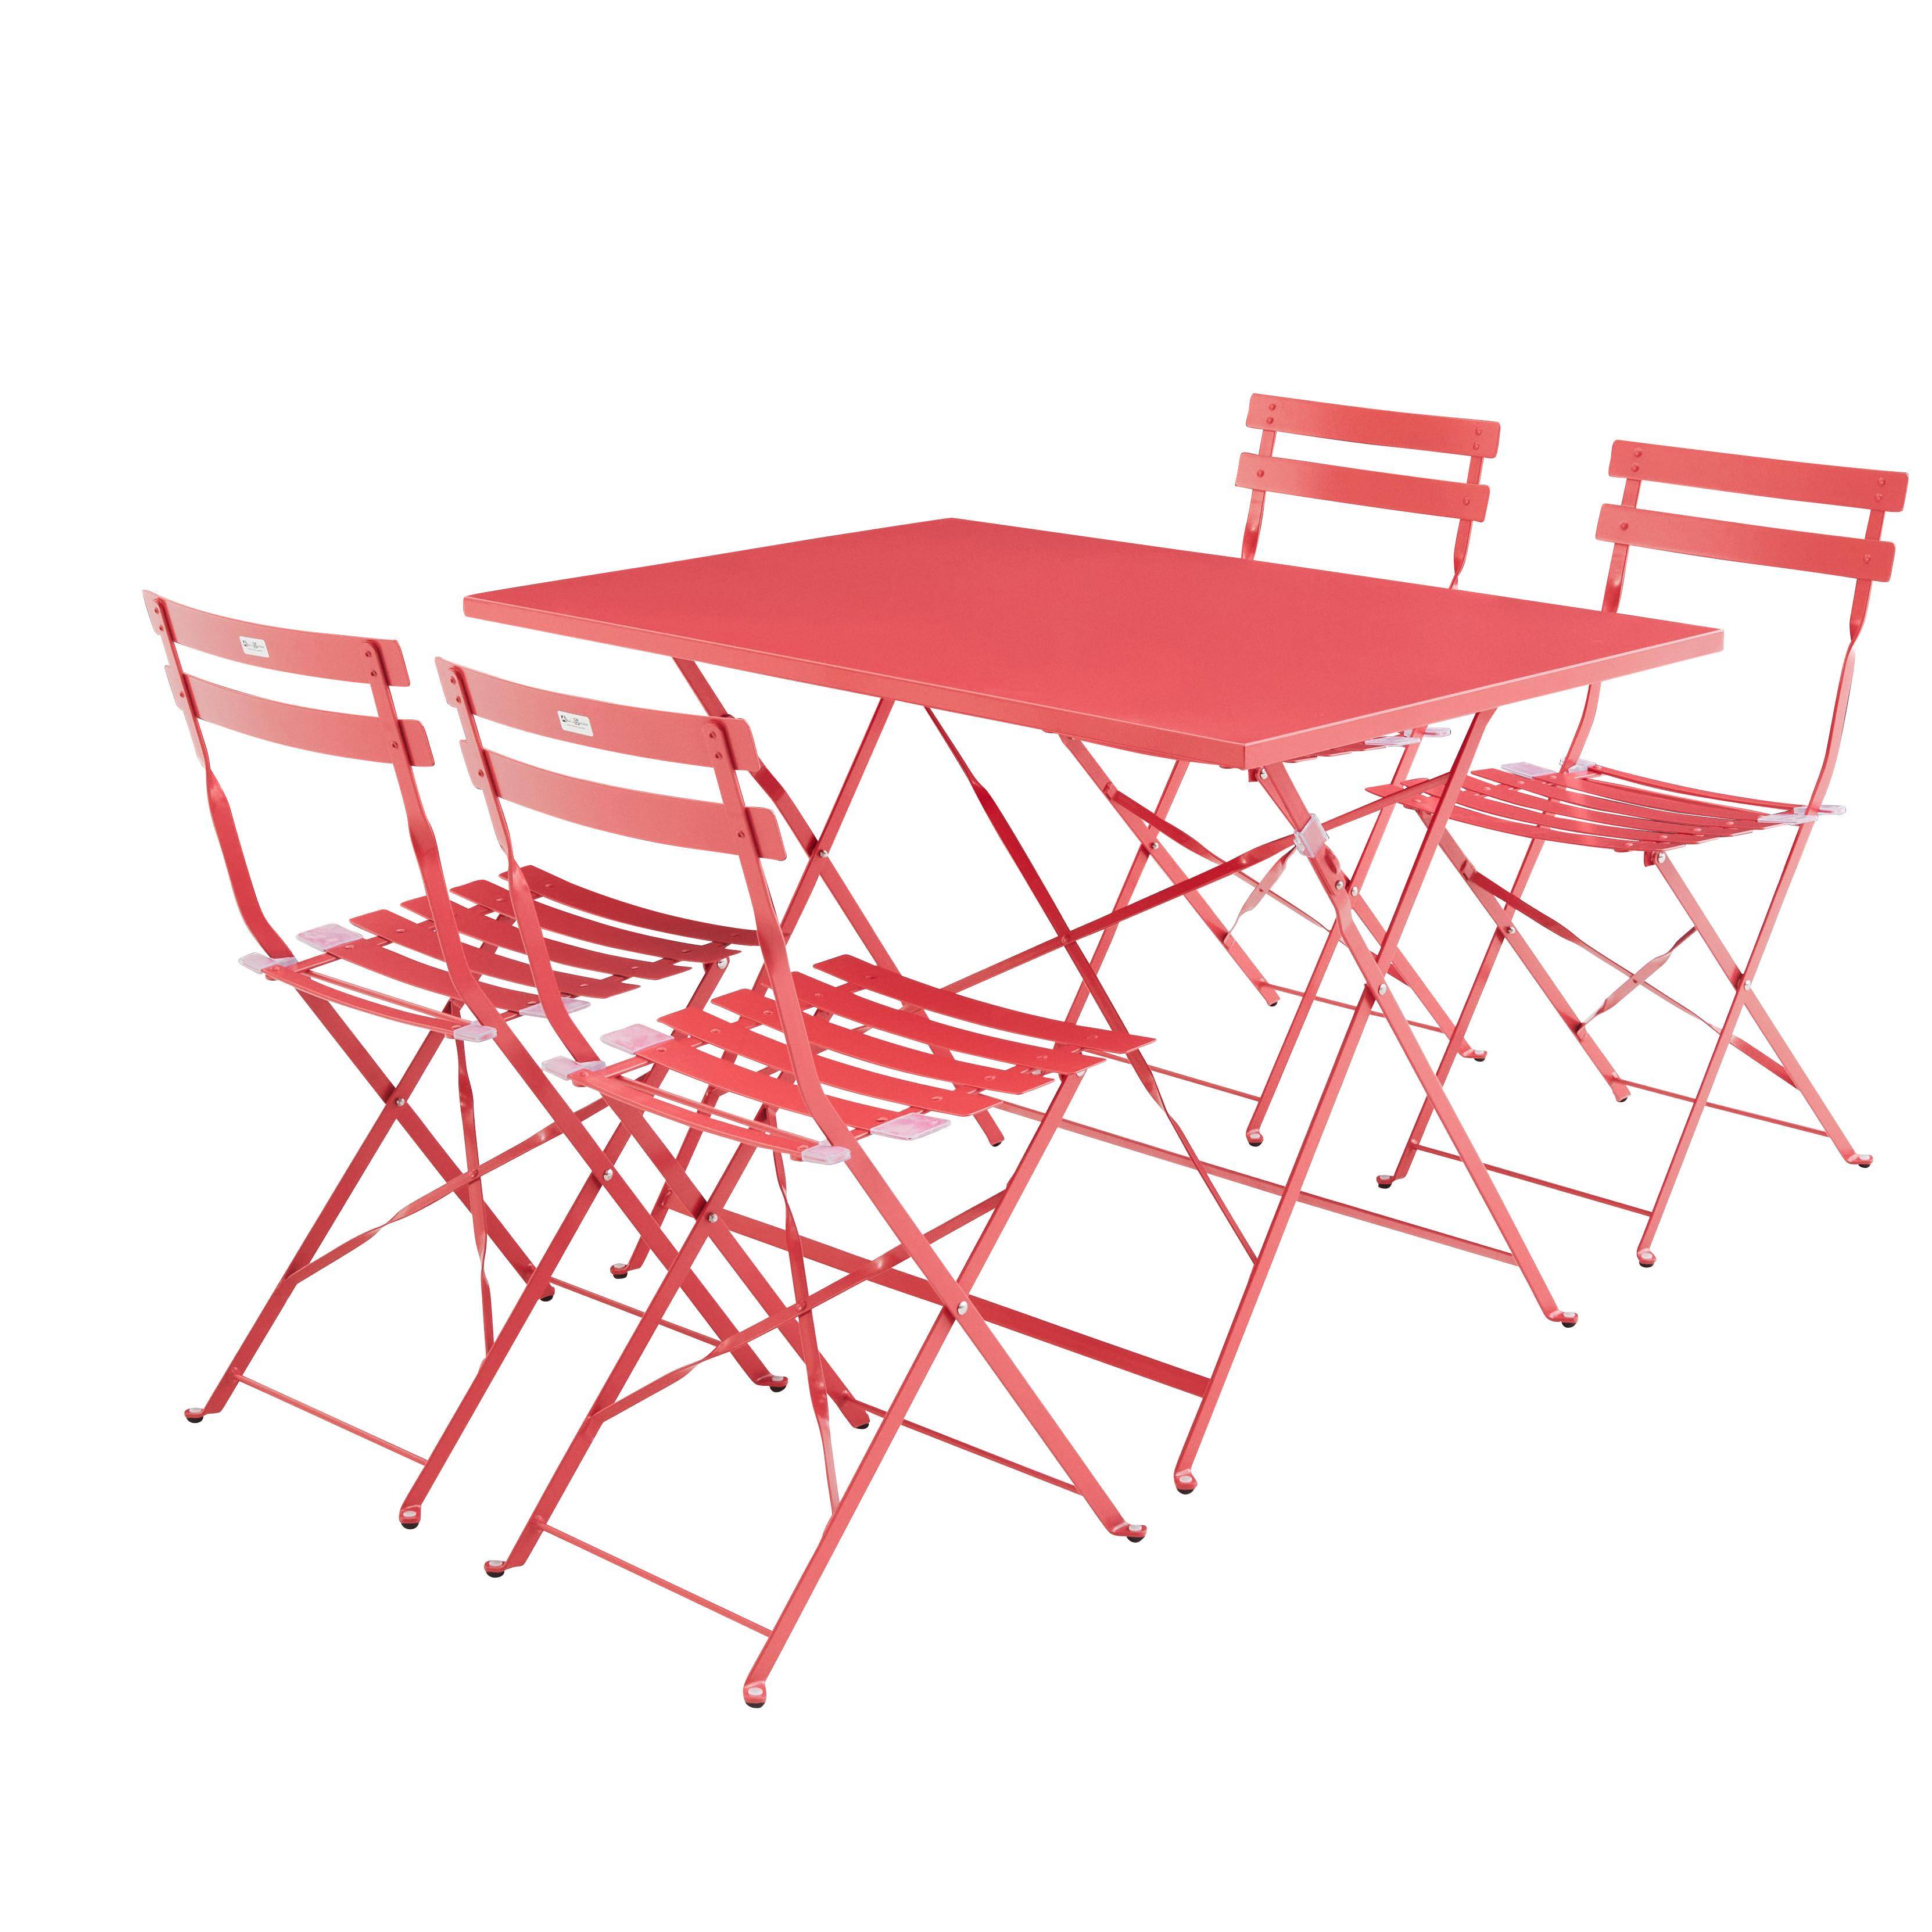 Tavolo da giardino, bar bistrot, pieghevole - modello: Emilia, rettangolare, colore: Rosso Lampone - Tavolo, dimensioni: 110x70cm, con quattro sedie pieghevoli, acciaio termolaccato Photo2